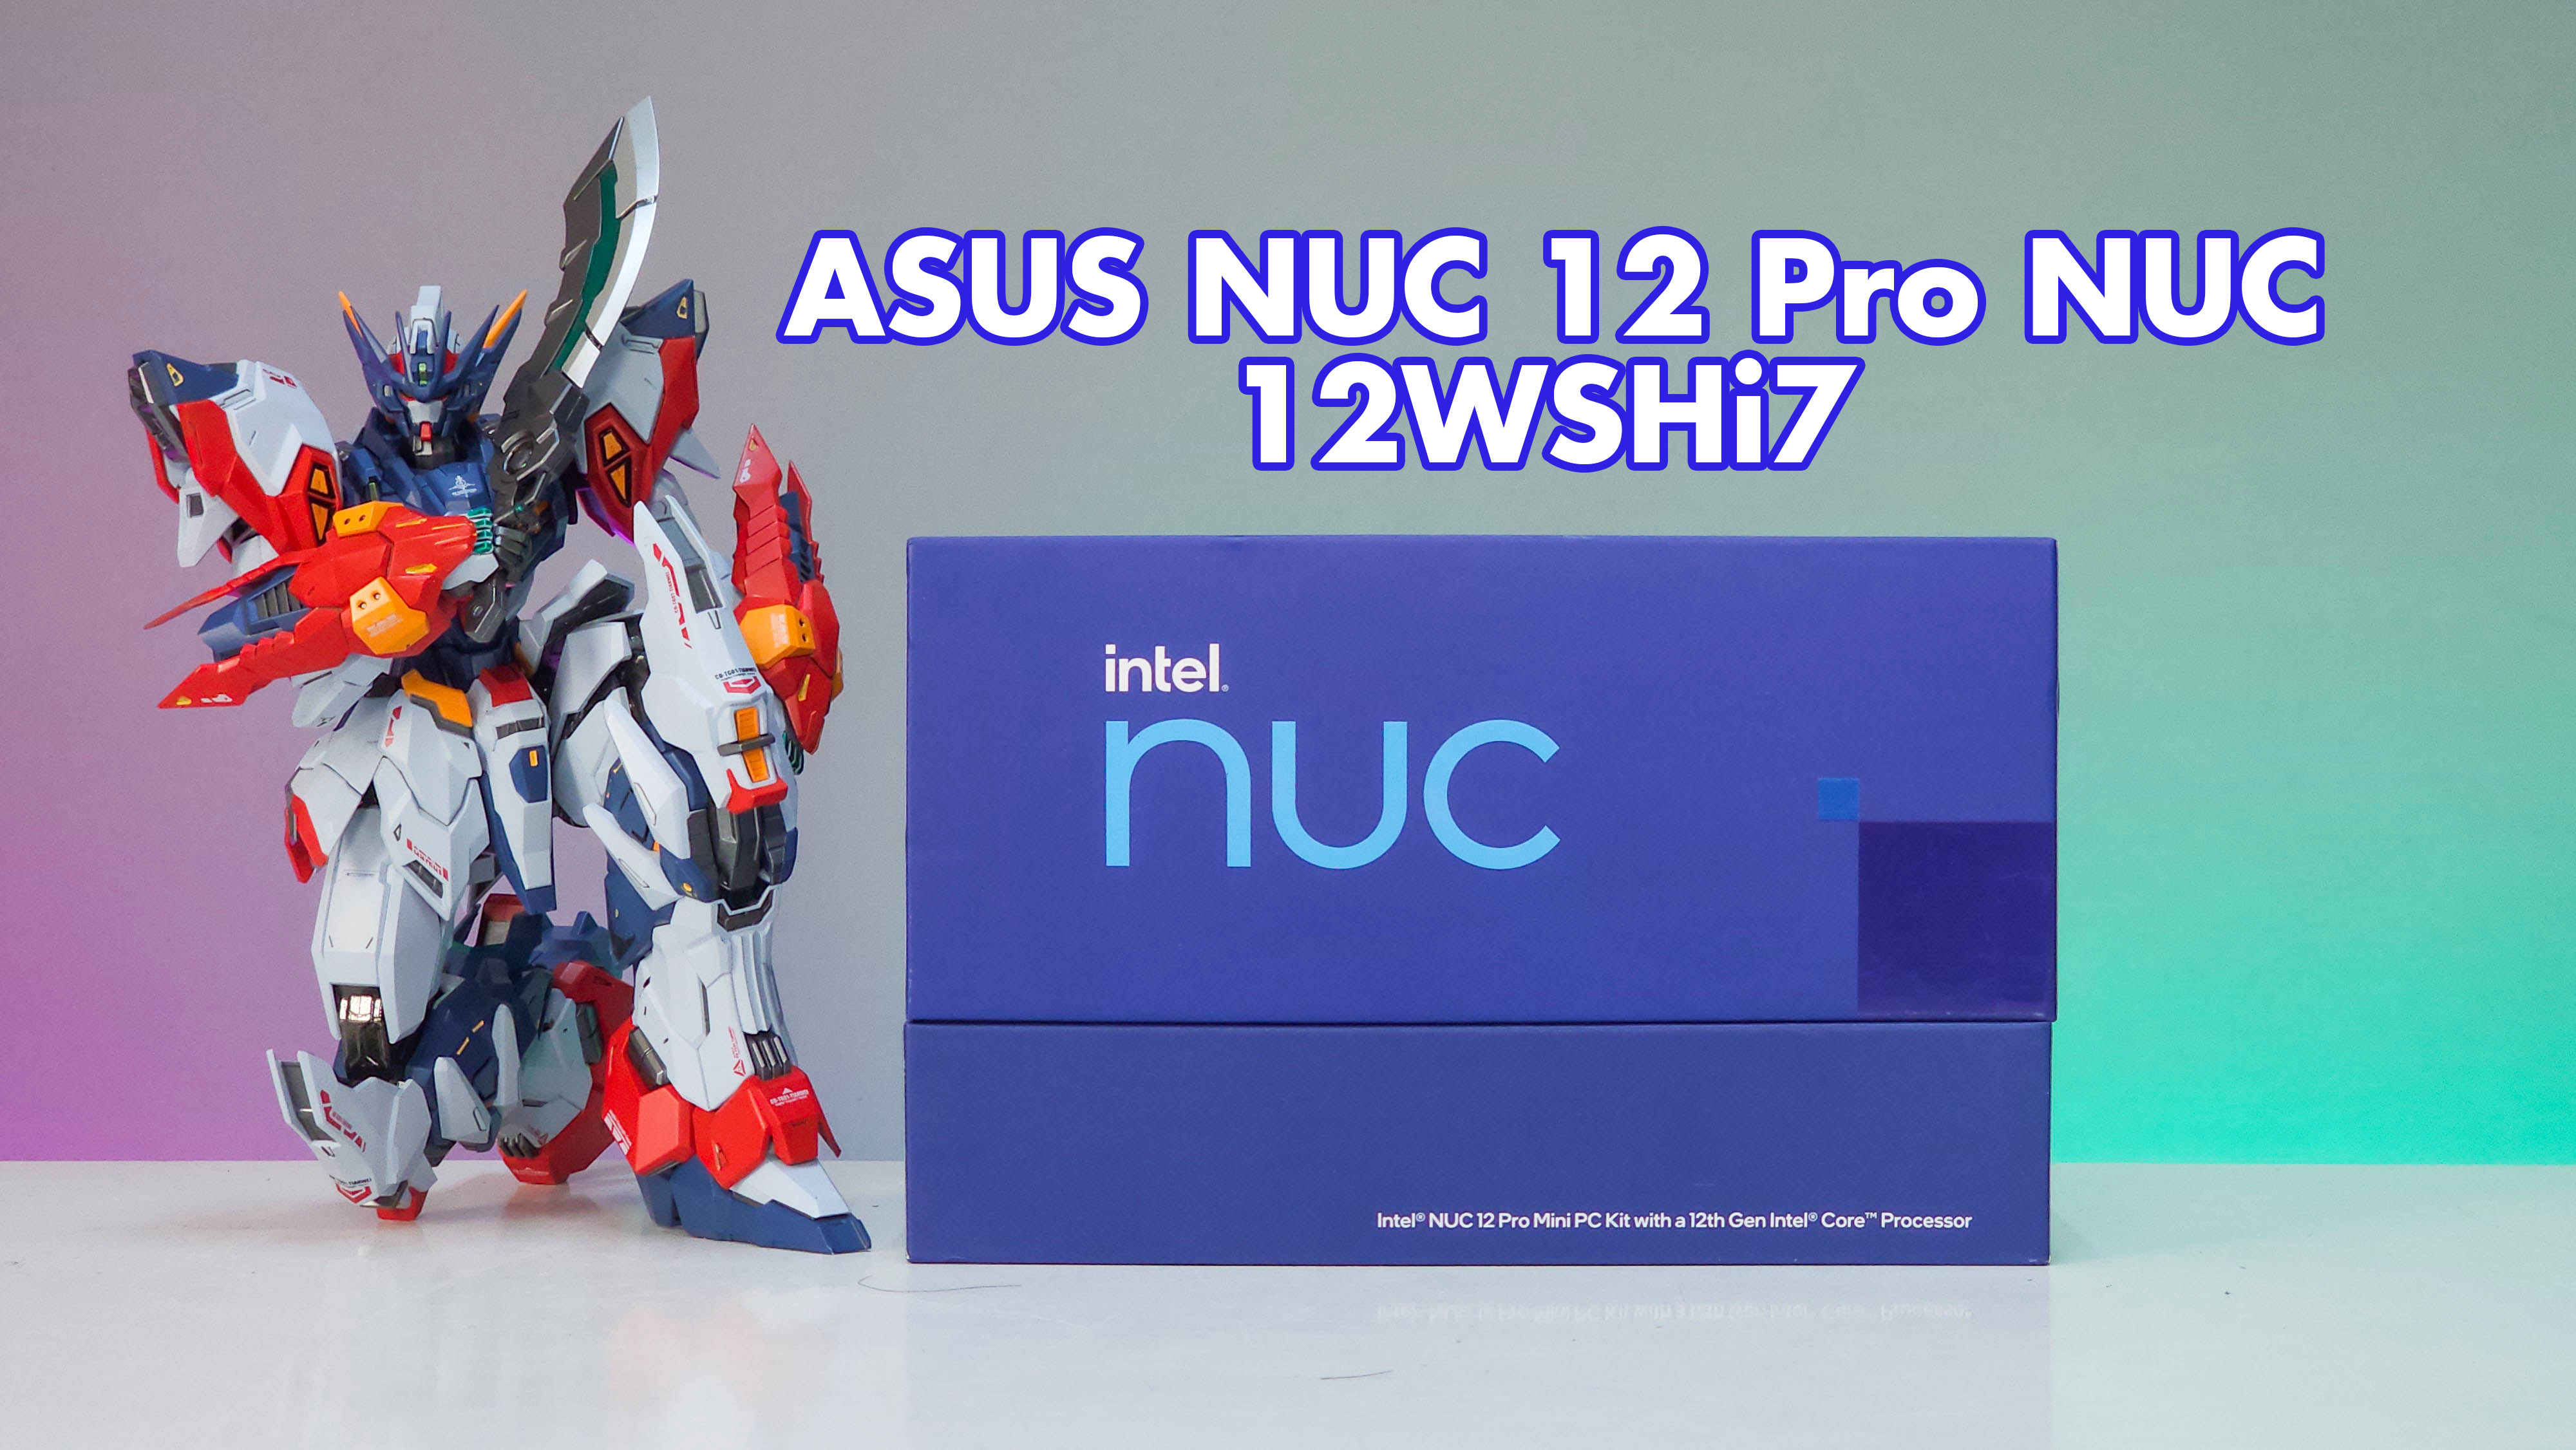 Đánh giá ASUS NUC 12 Pro NUC12WSHi7 - nhỏ gọn, hiệu suất mạnh mẽ, kế thừa sáng giá cho dòng Intel NUC